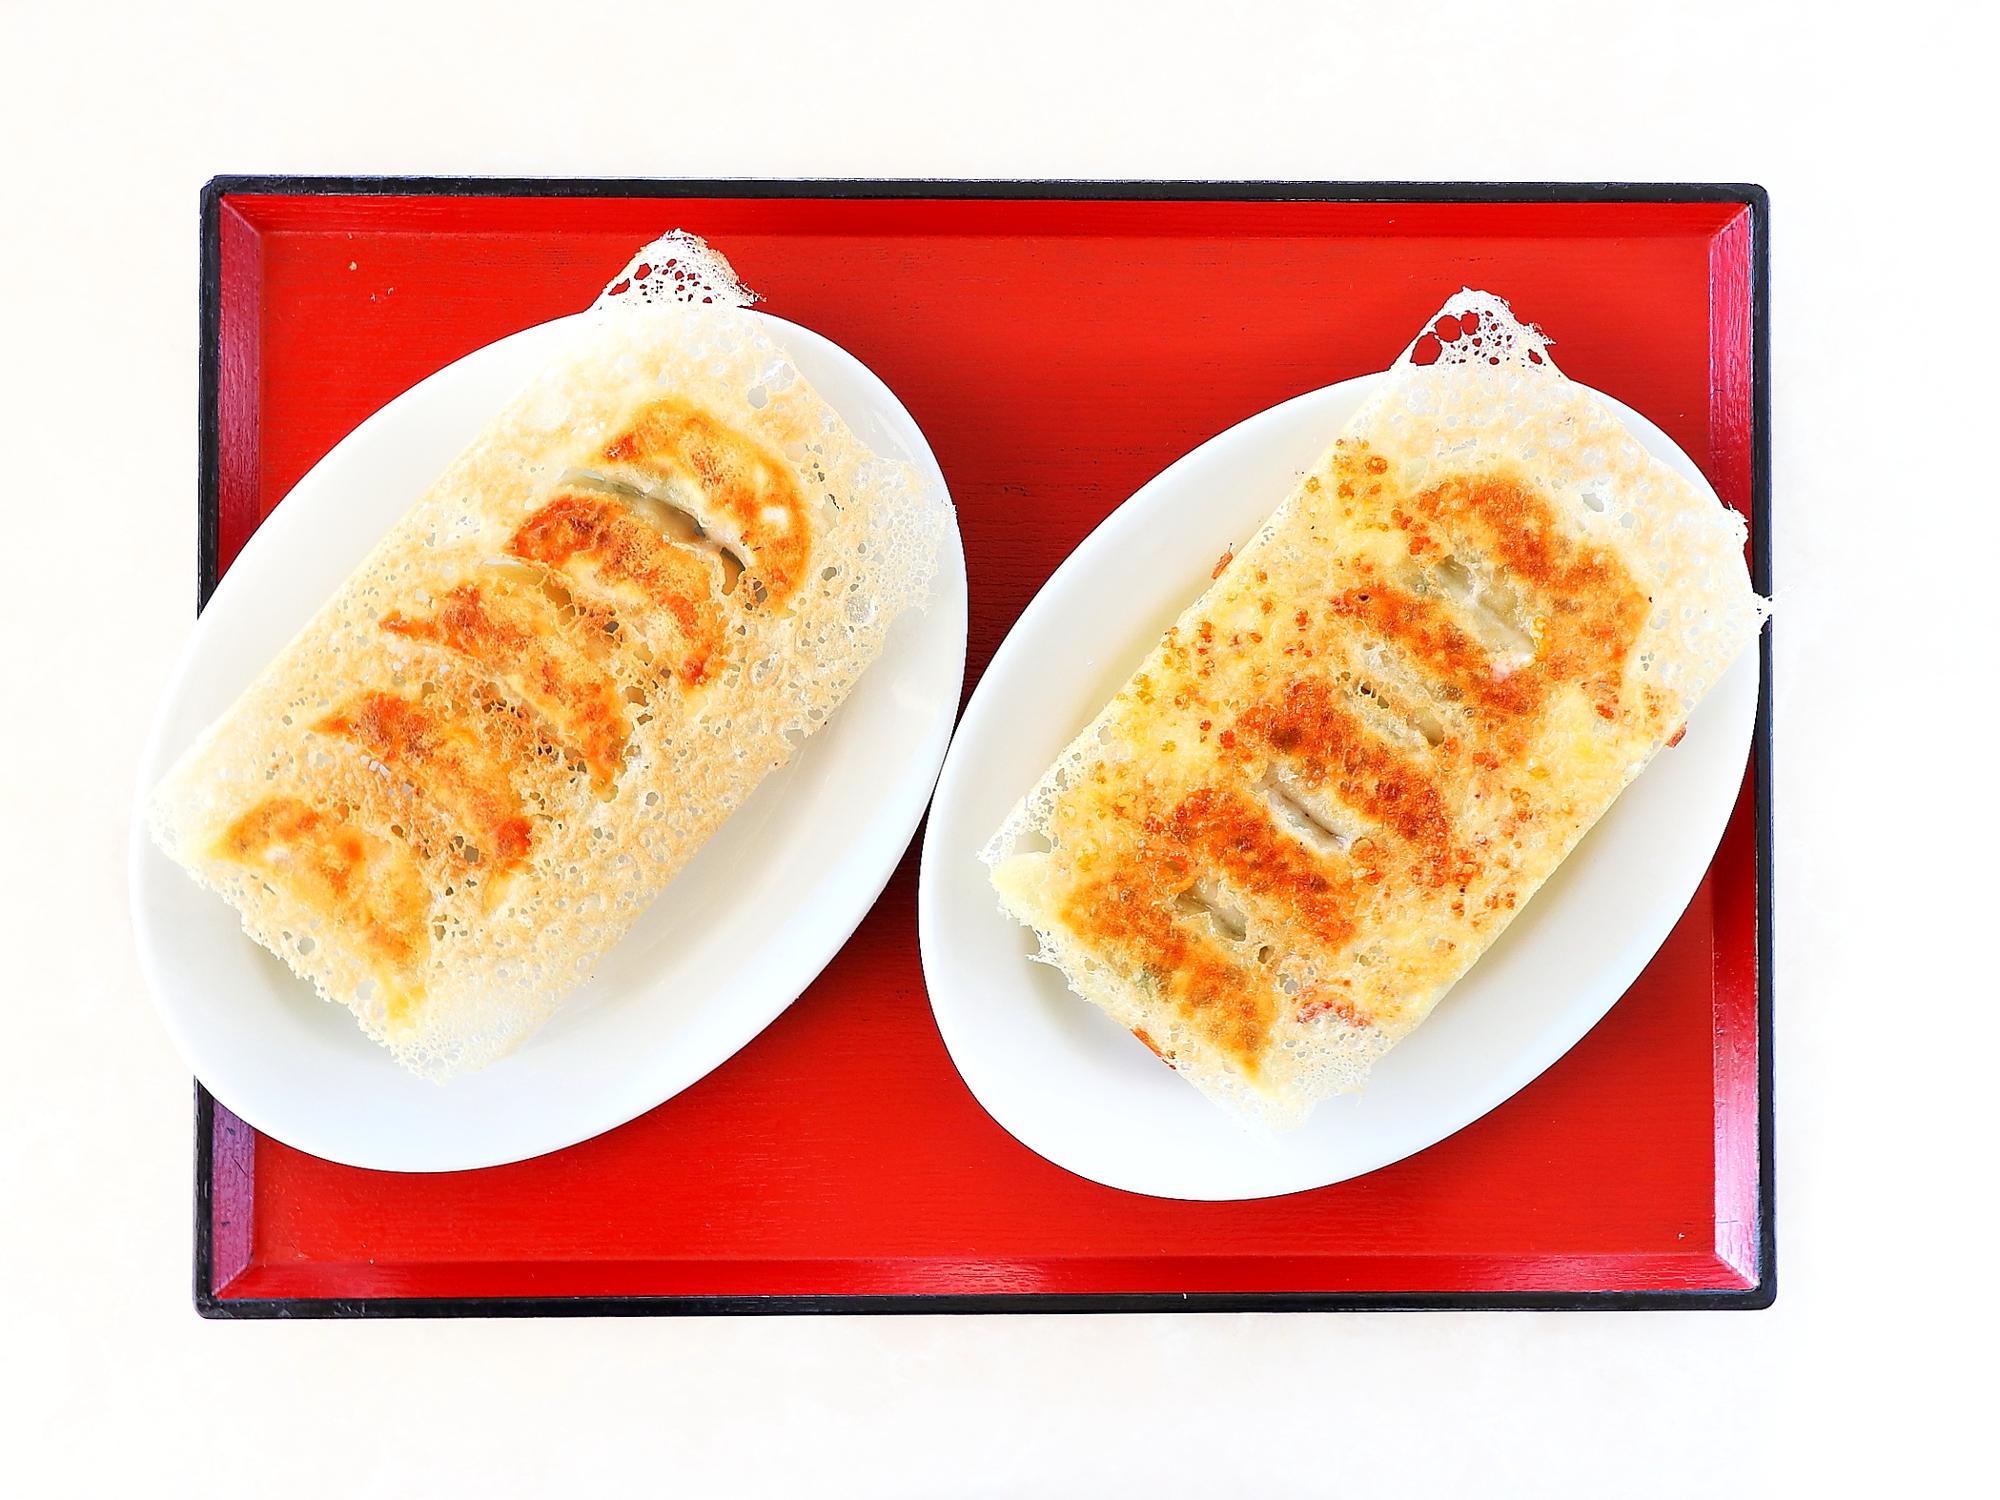 写真左「エビ焼き餃子」、写真右「チーズ焼き餃子」